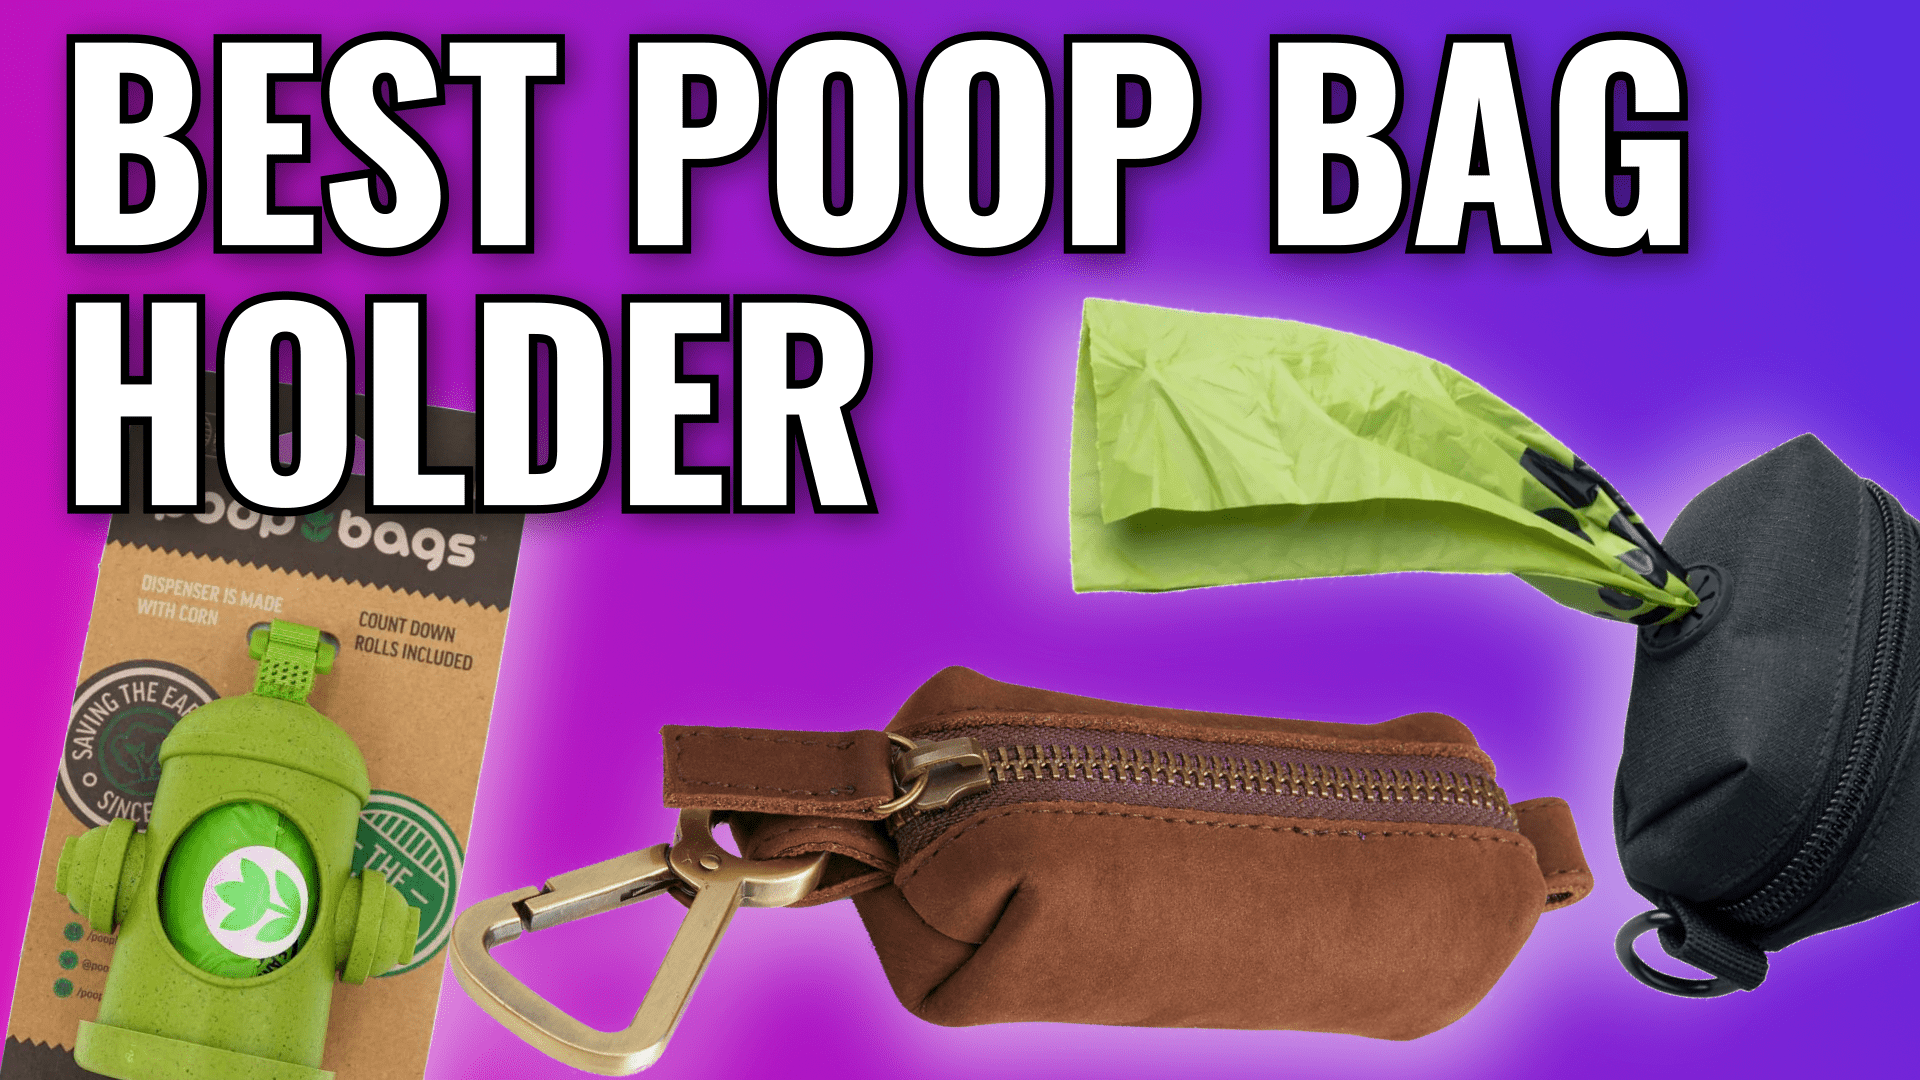 Dog Poop Bag Holder | Approved by Fritz Pink Lemonade